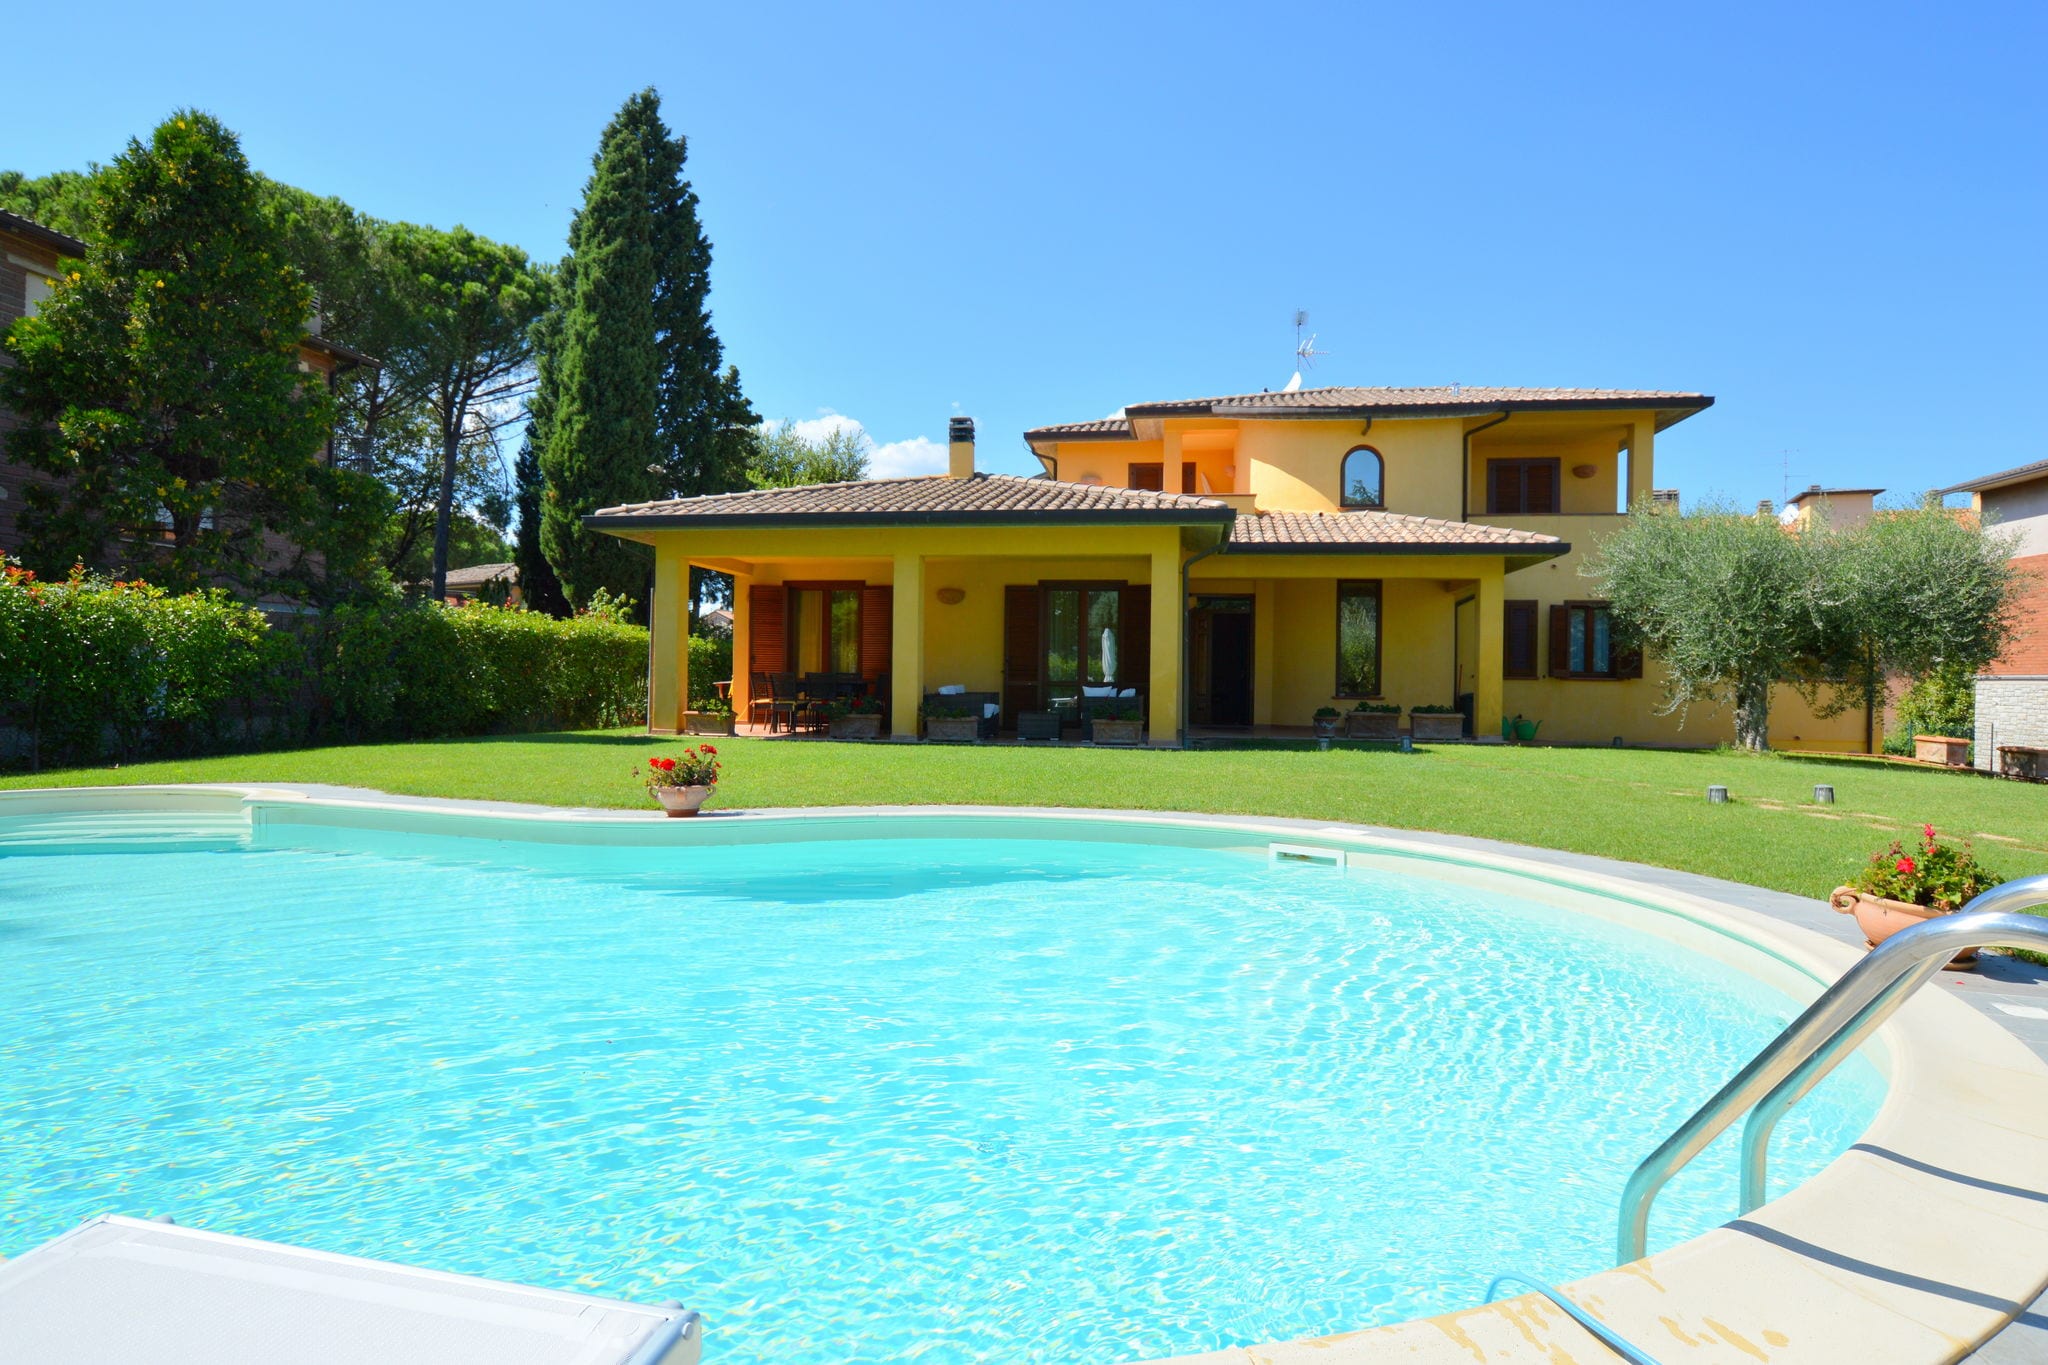 Stilvolle Wohnung in Marsciano Perugia mit Pool